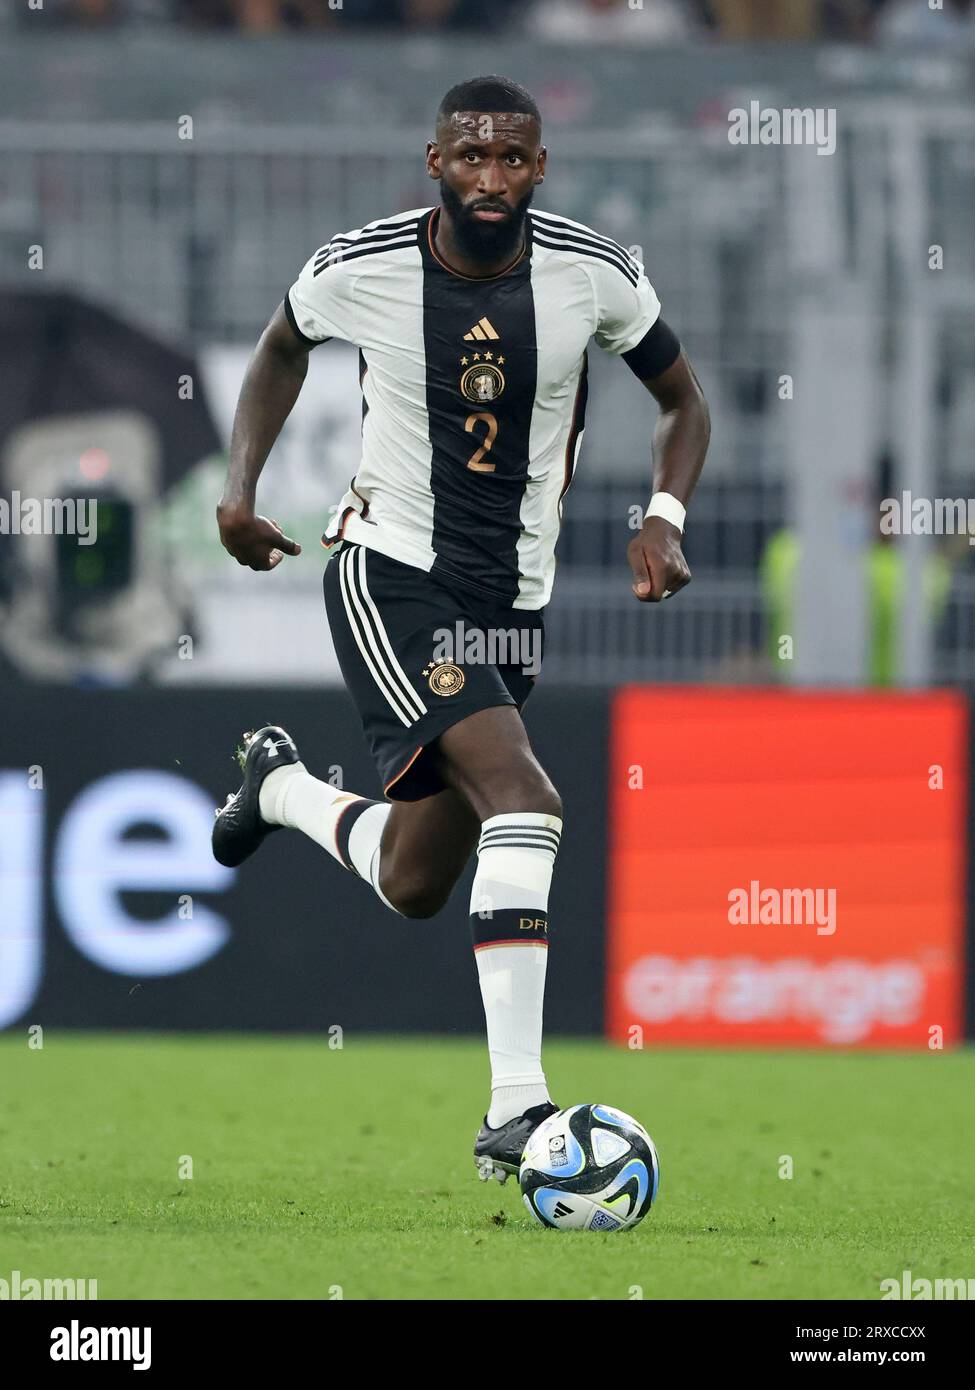 Antonio Ruediger of Germany  Fussball LŠnderspiel Deutschland - Frankreich 2:1 © diebilderwelt / Alamy Live News Stock Photo